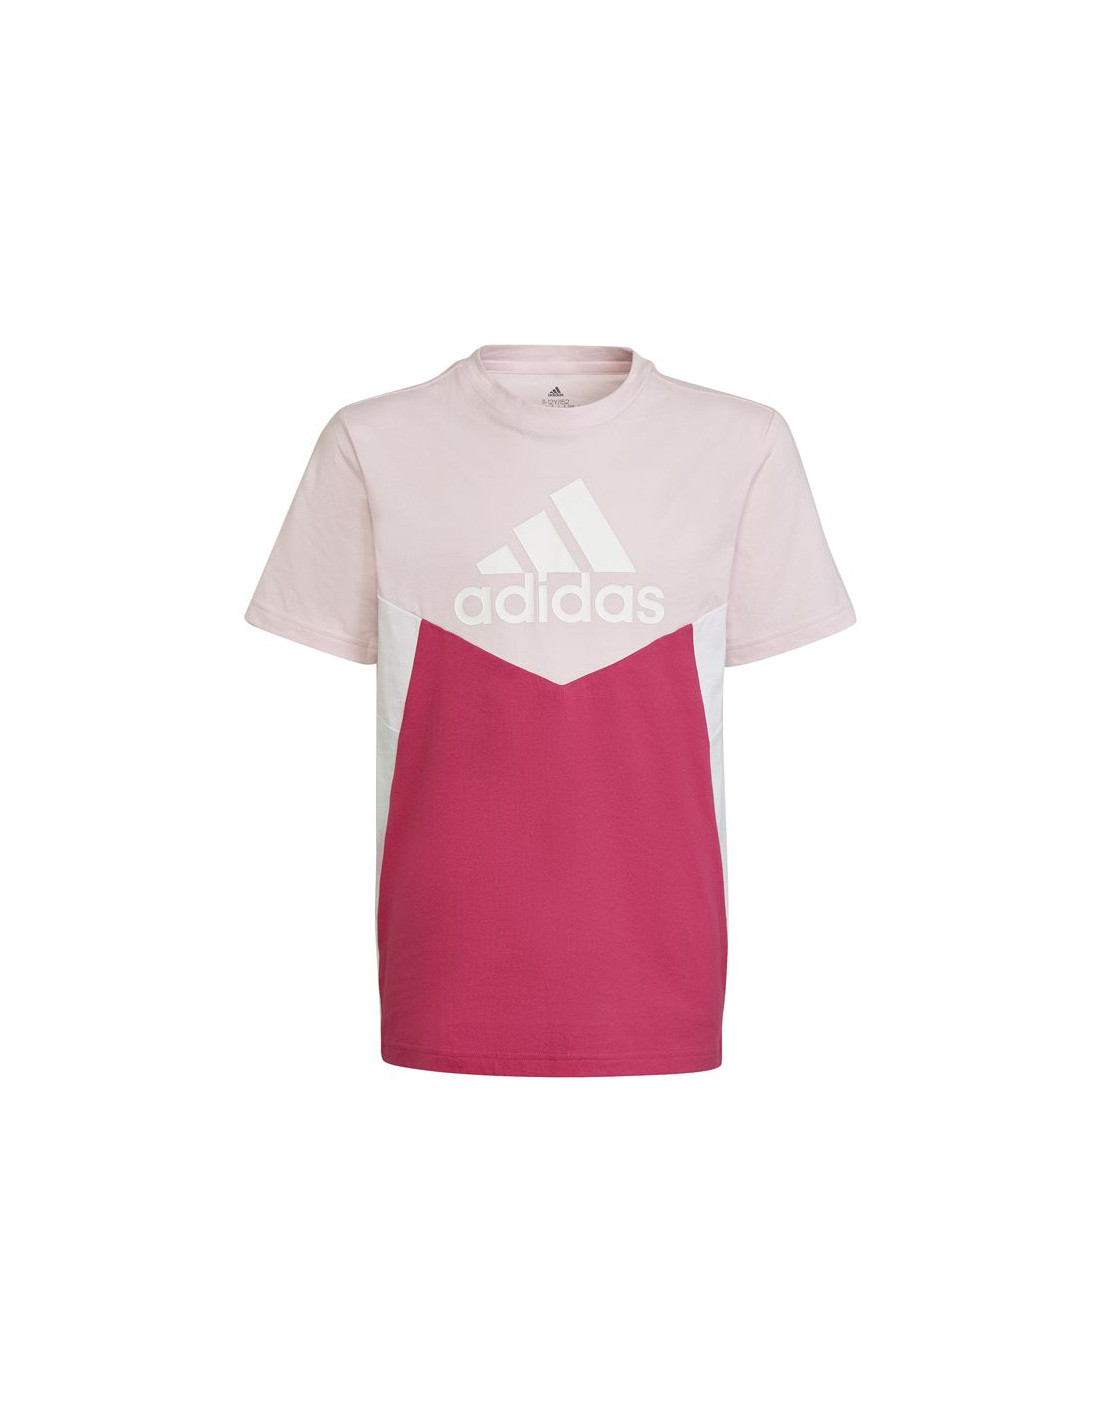 Camiseta adidas colorblock niña pink